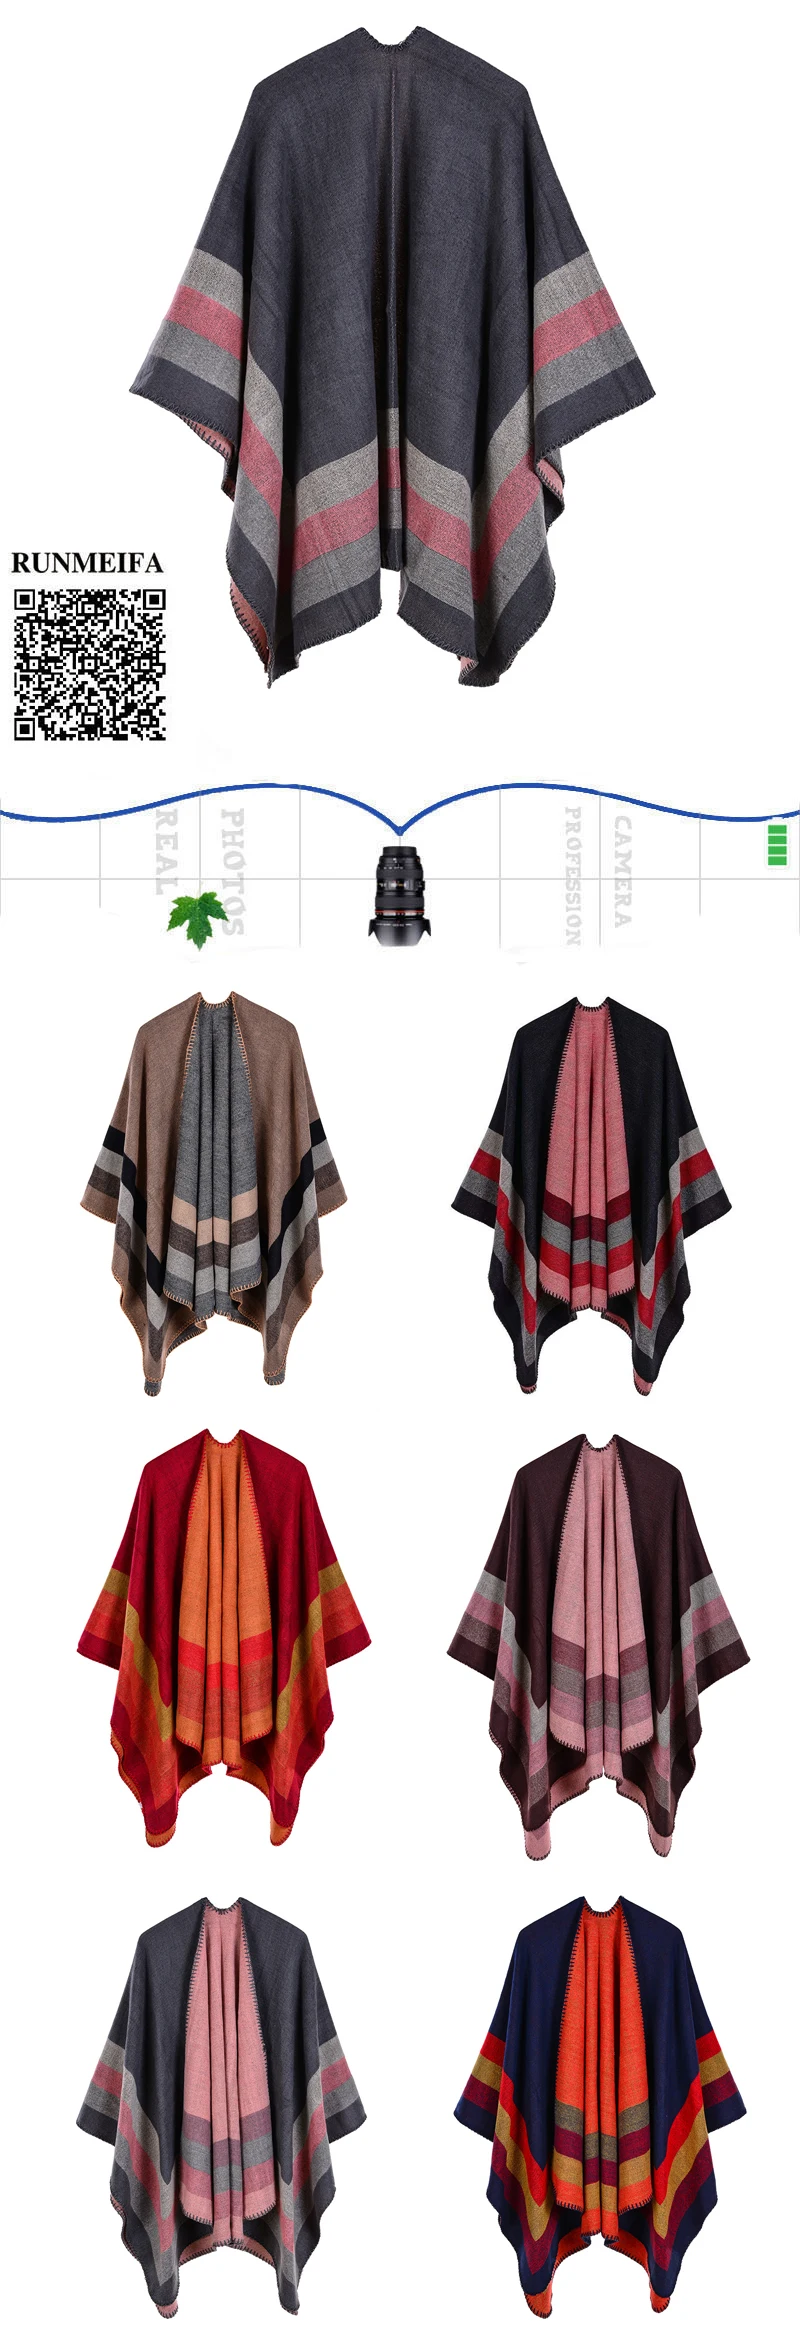 Дизайн 50% акрил и 50% полиэстер фуляр женский Осень/зима теплый модный шарф, шаль пончо 130*150 см палантин шаль